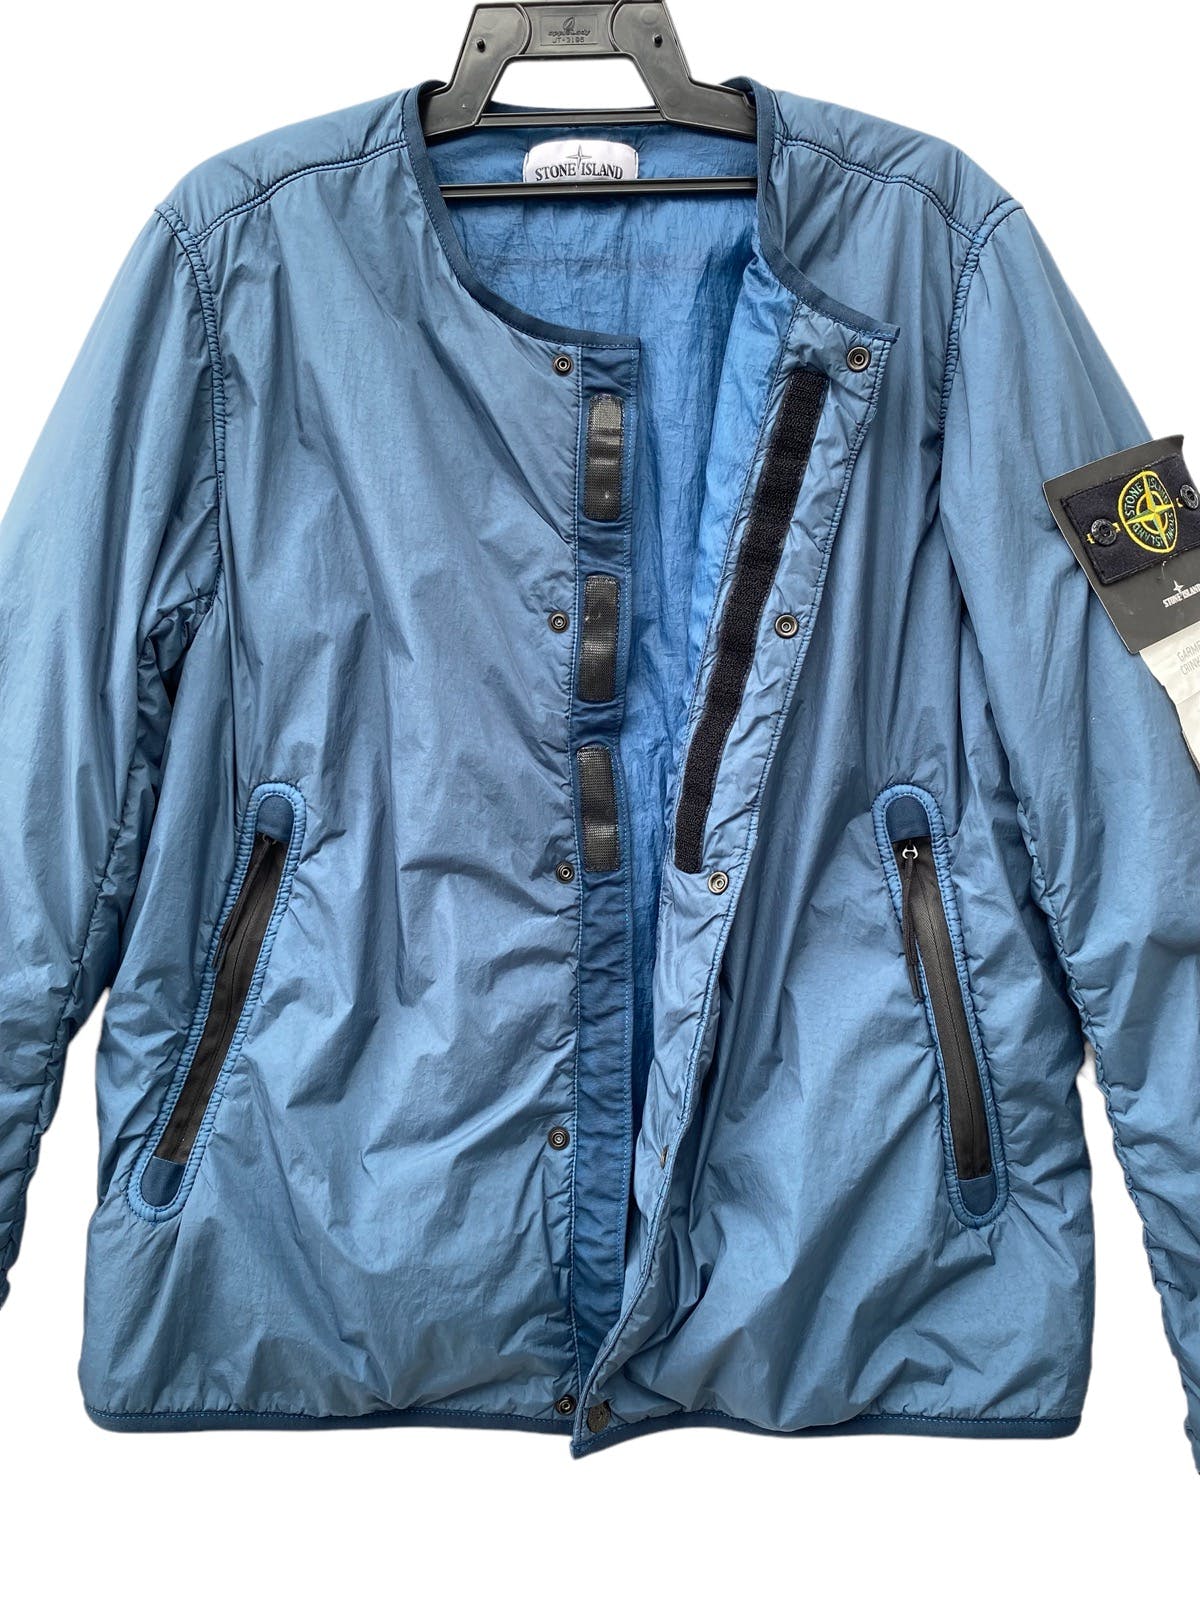 STONE ISLAND garment dyed crinkle reps ny blouson jacket - 3